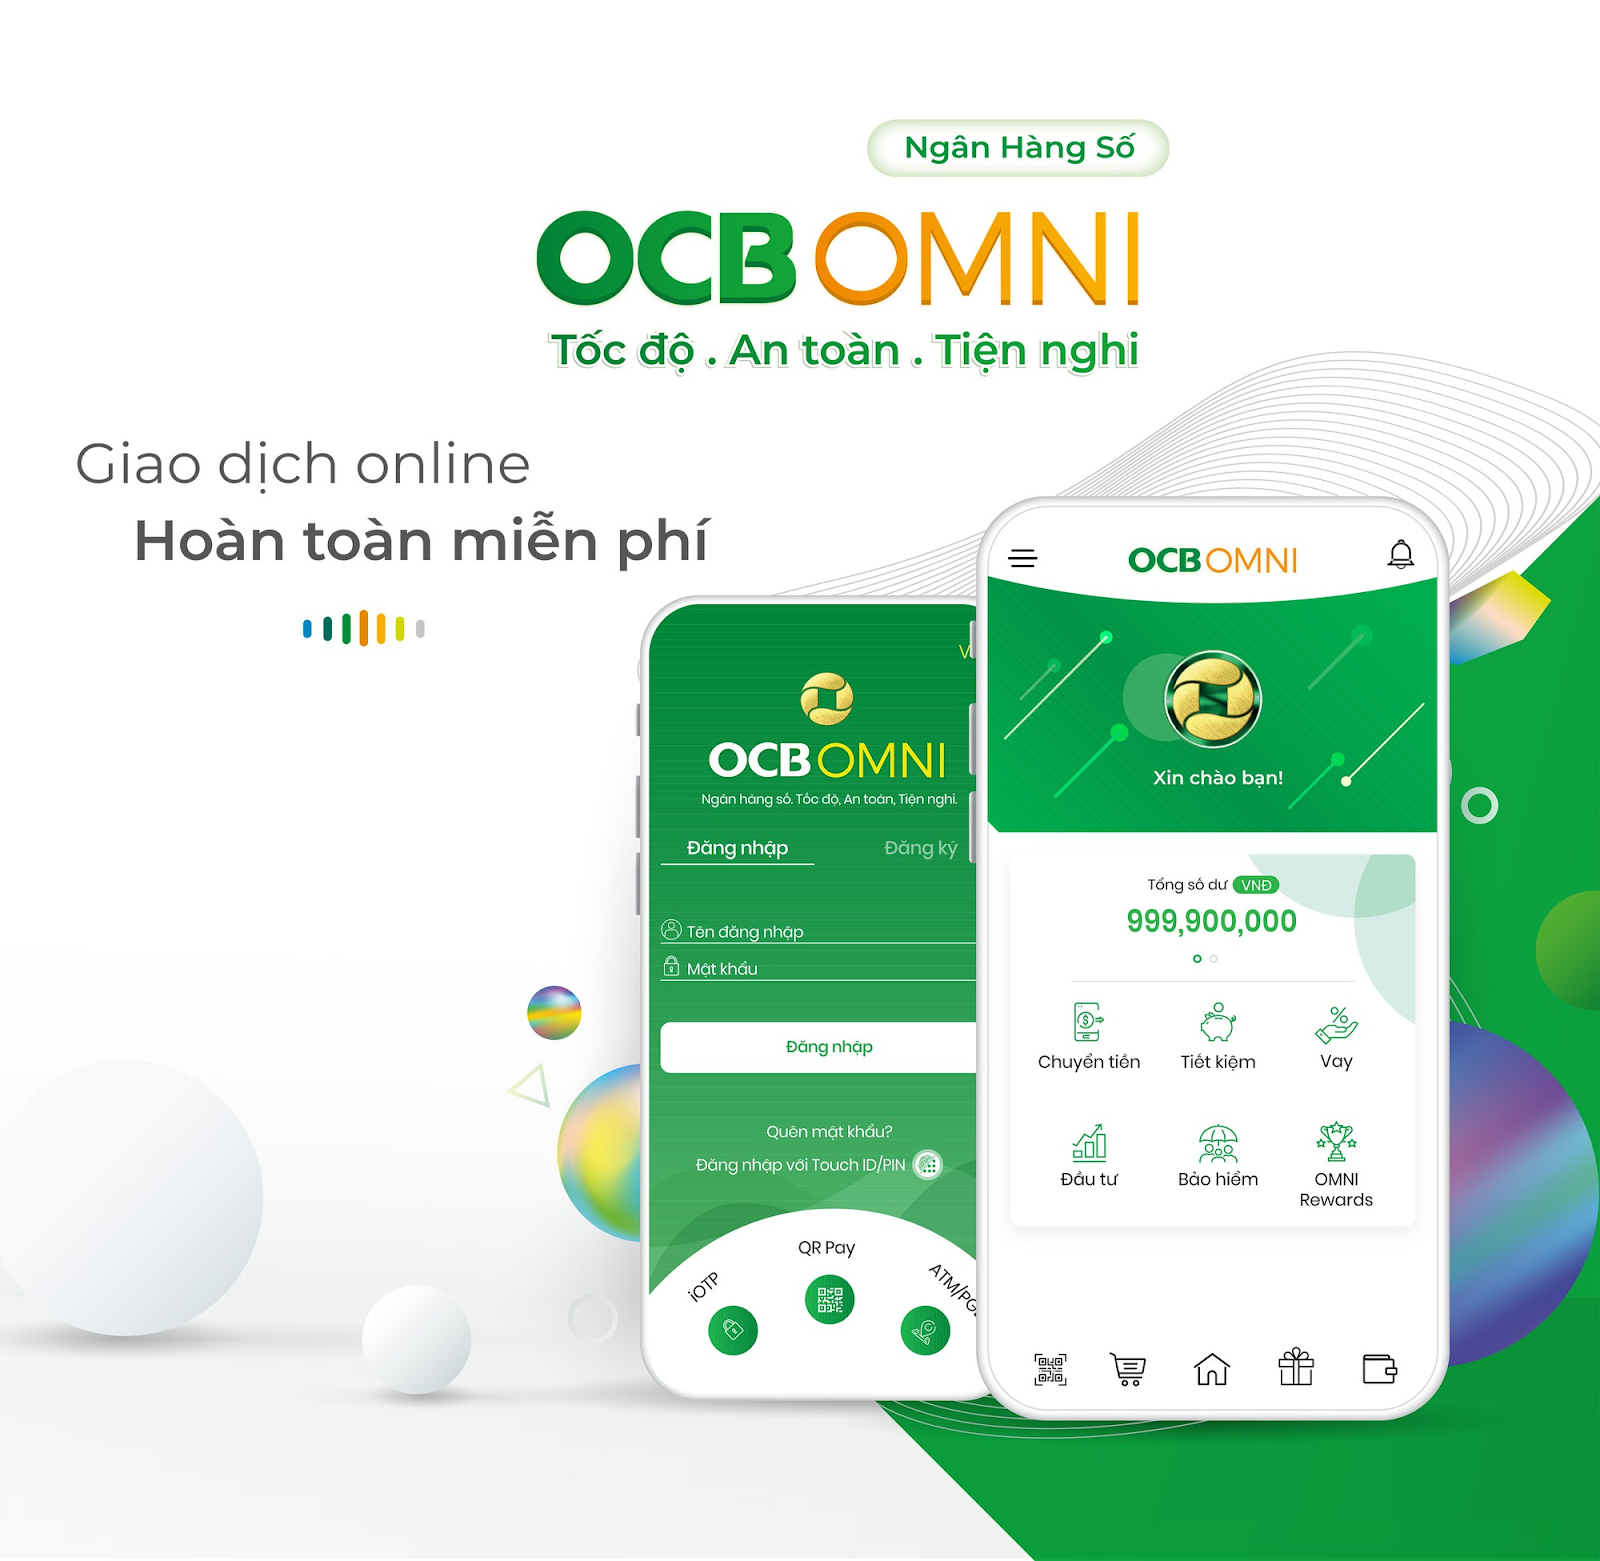 OCB OMNI là gì?